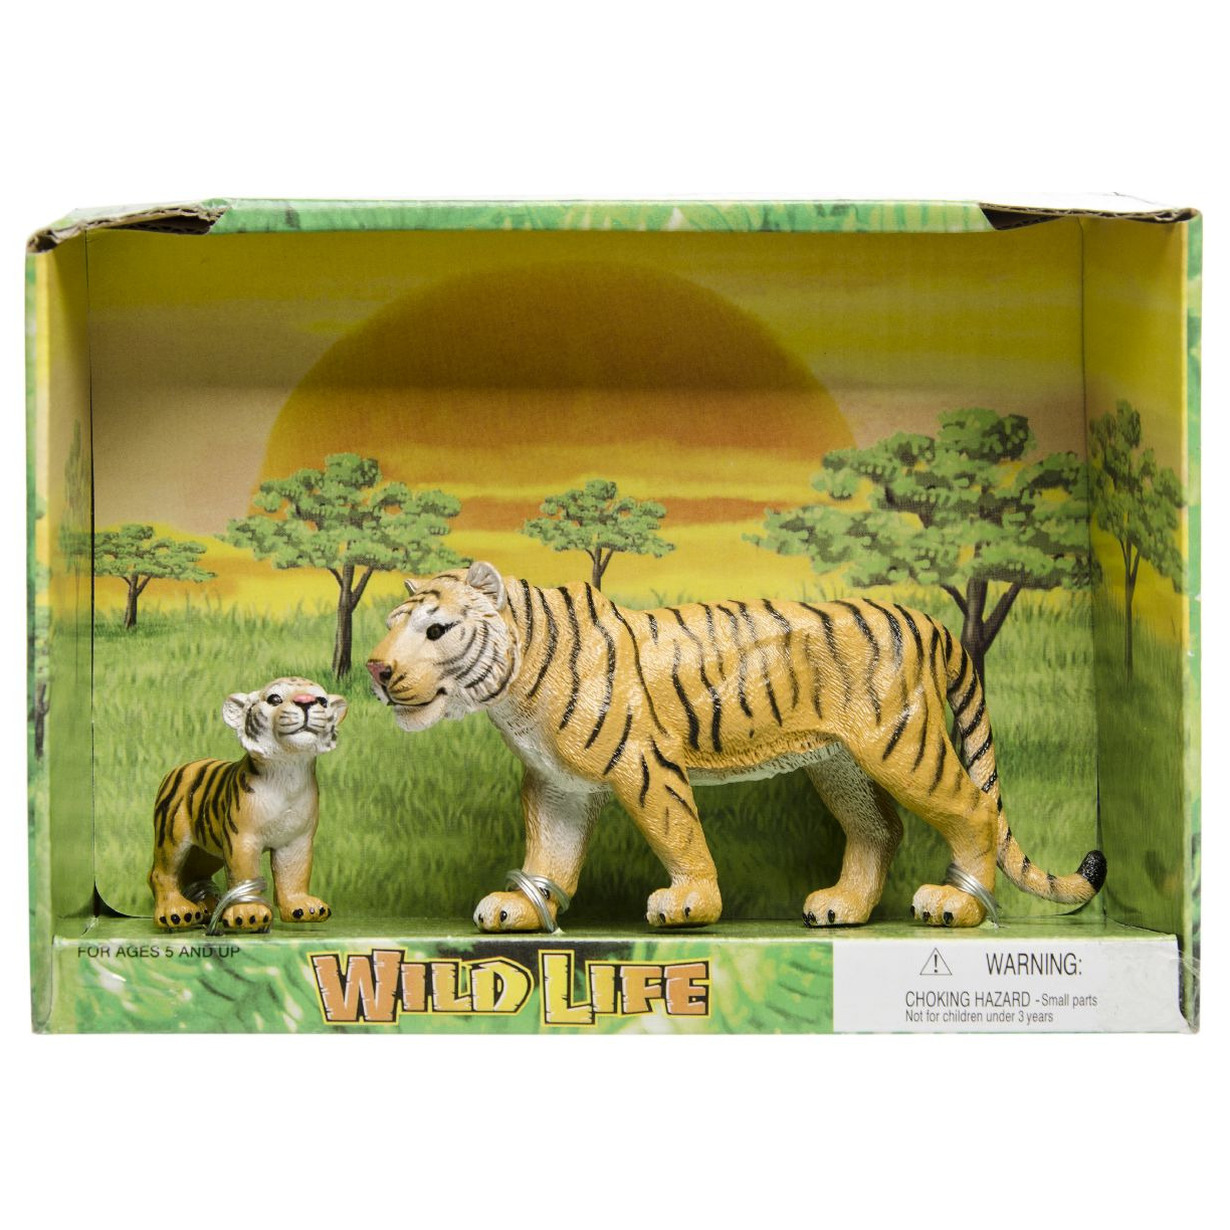 Plastic safari/wilde dieren tijger met welp